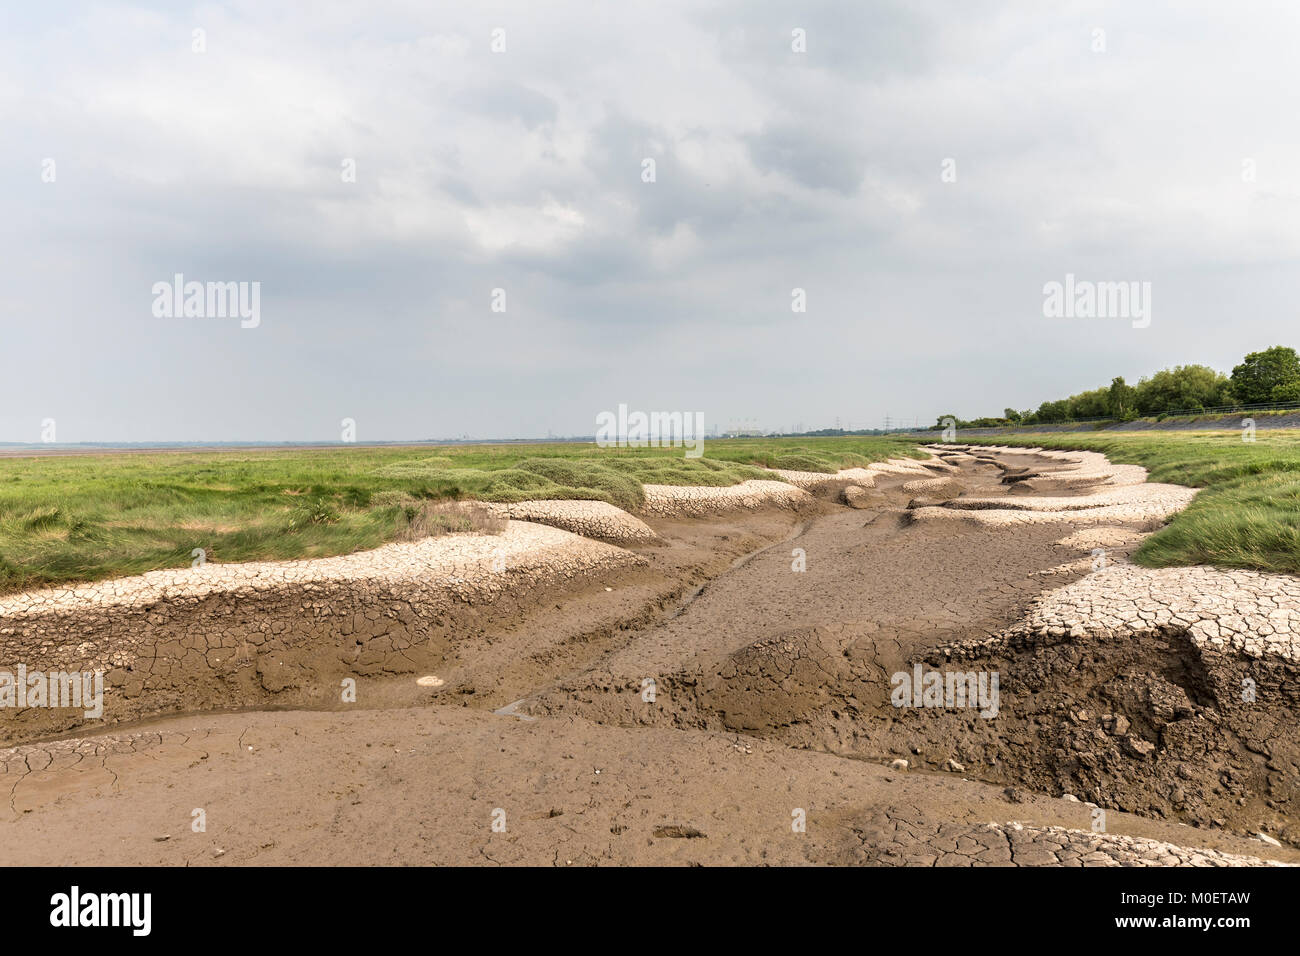 Muddy inlets in salt marsh, Dee estuary, Flint, Flintshire, Wales, UK Stock Photo